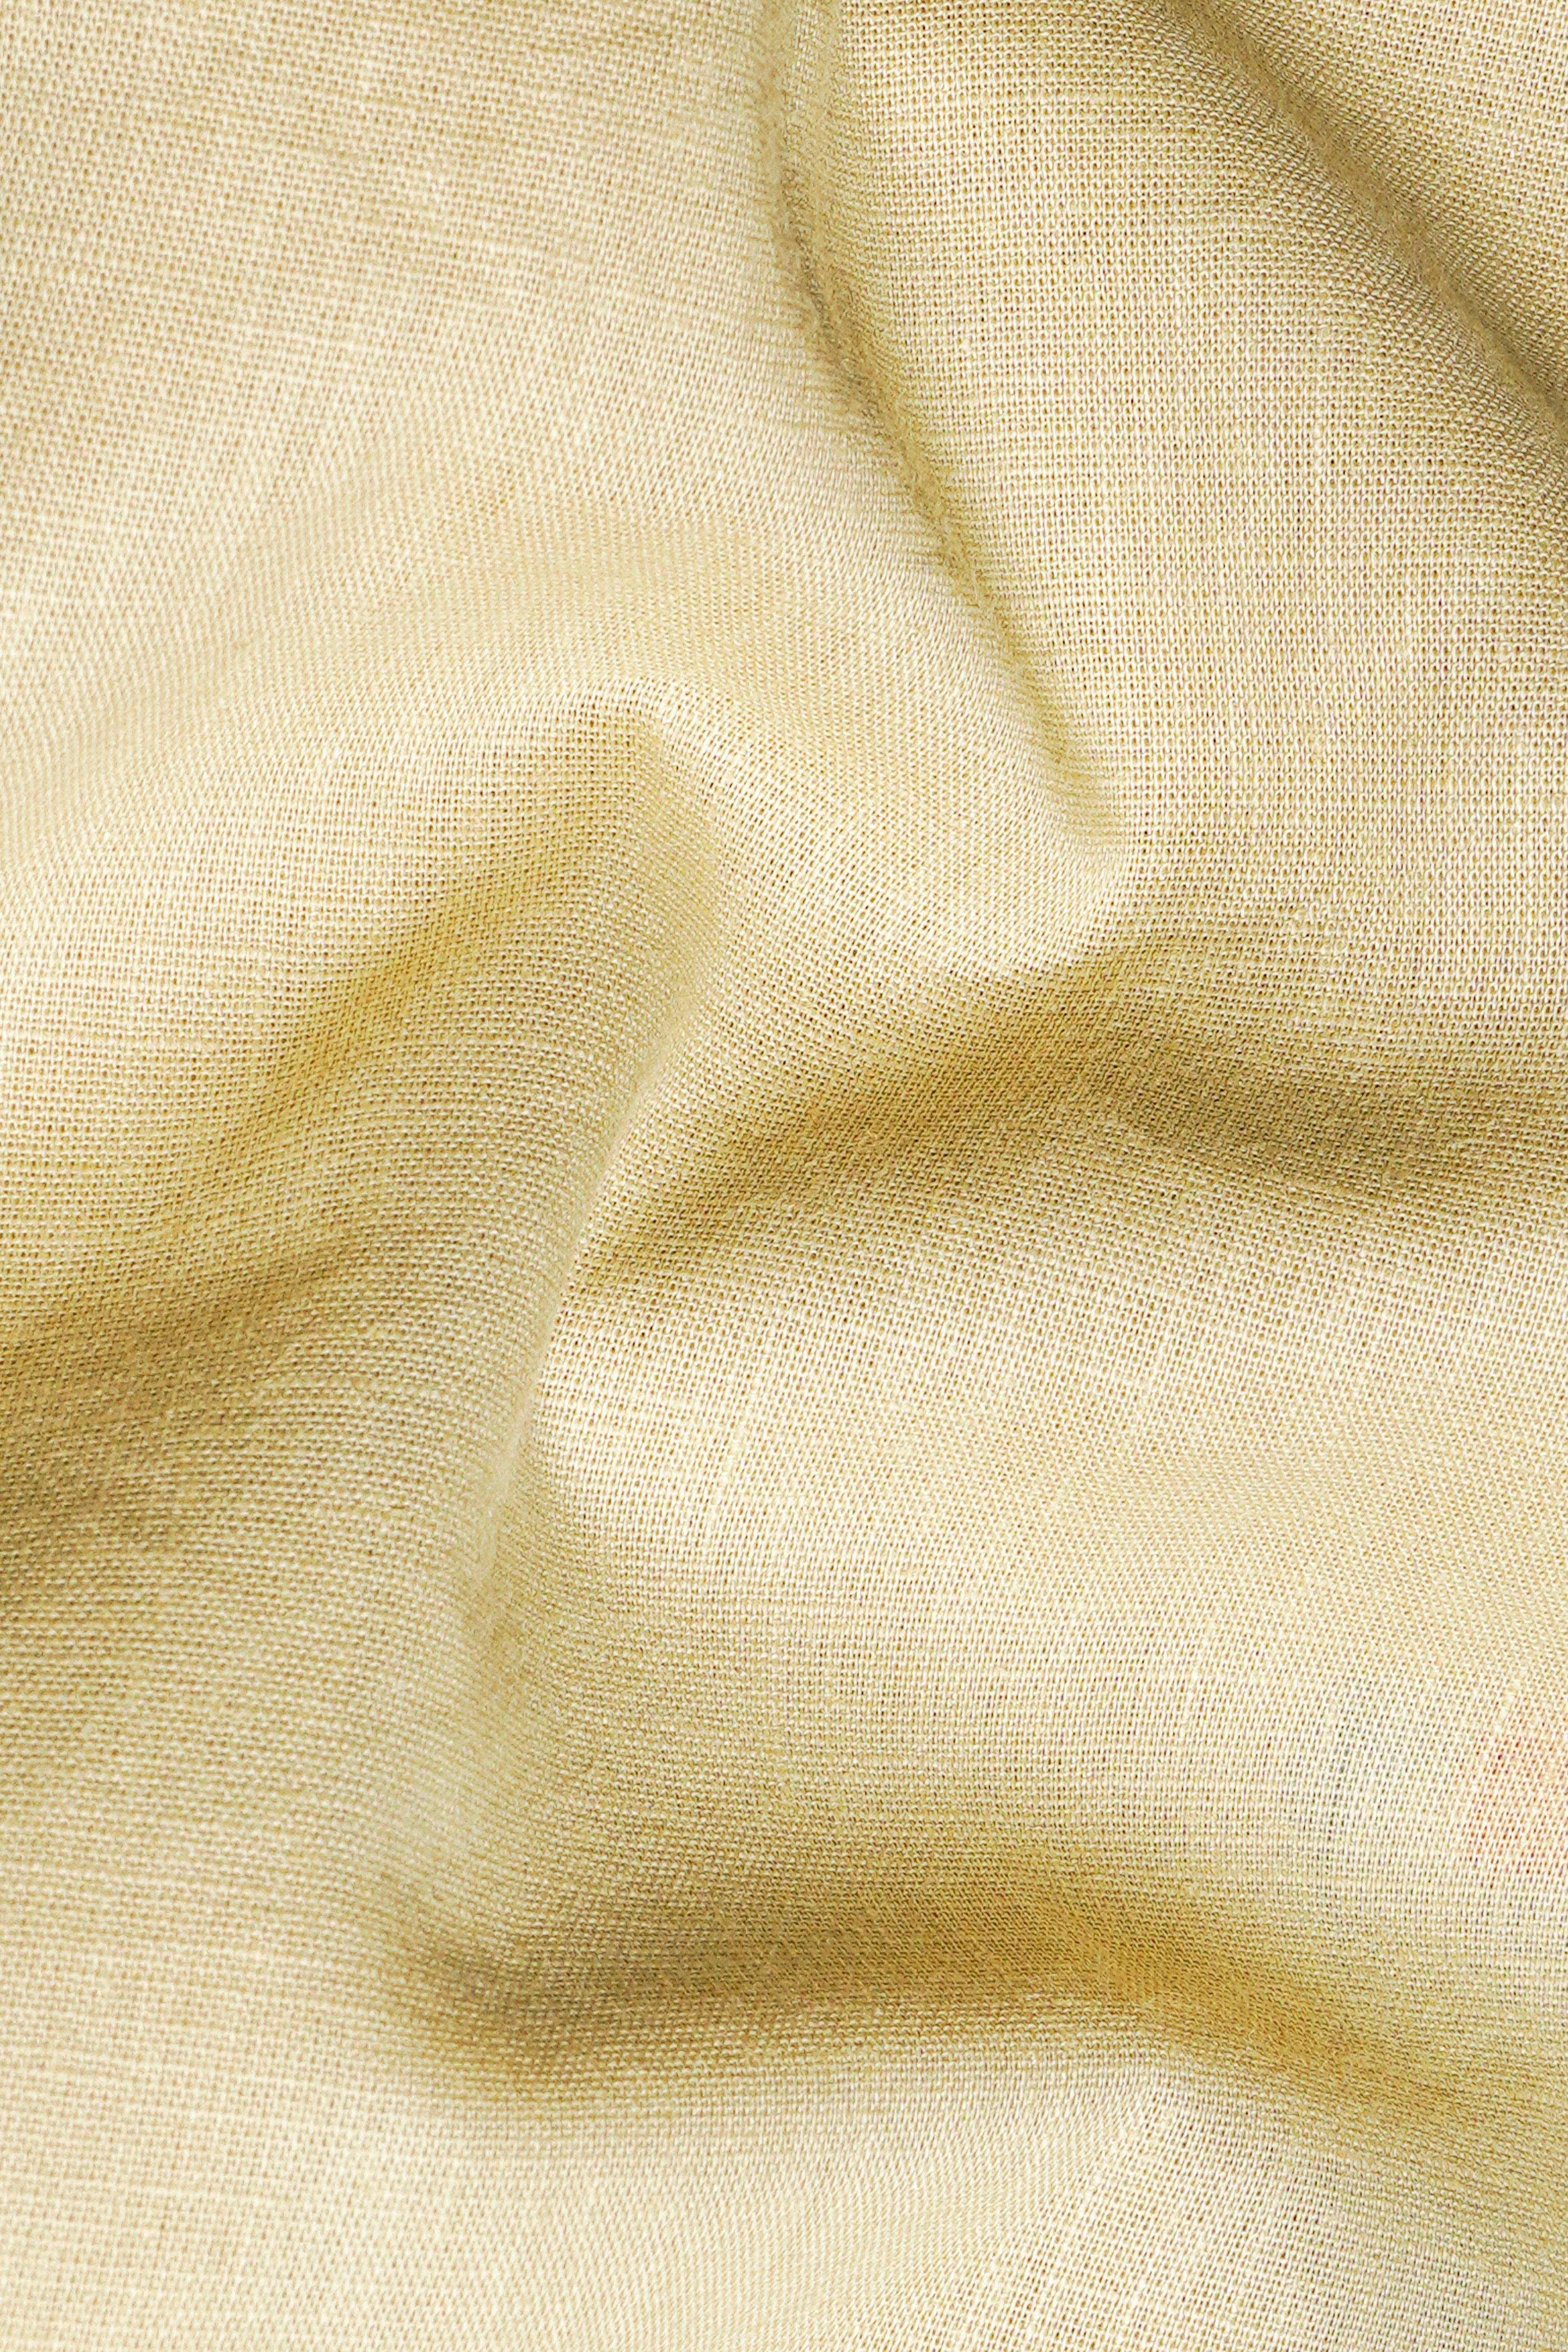 Maize Brown Hand Painted Luxurious Linen Designer Shirt